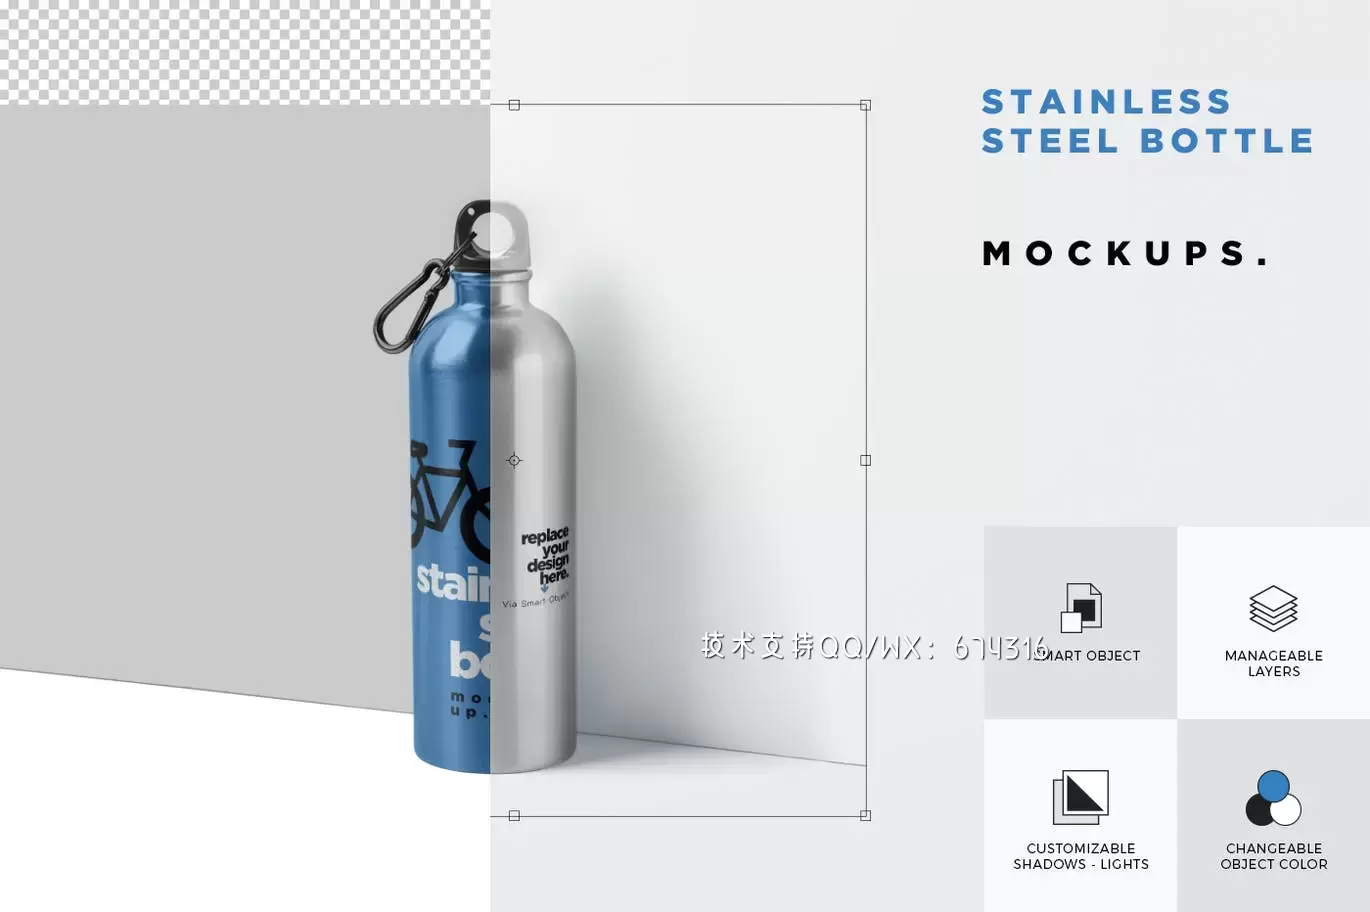 时尚高端高品质的热水瓶包装设计VI样机展示模型mockups免费下载插图2